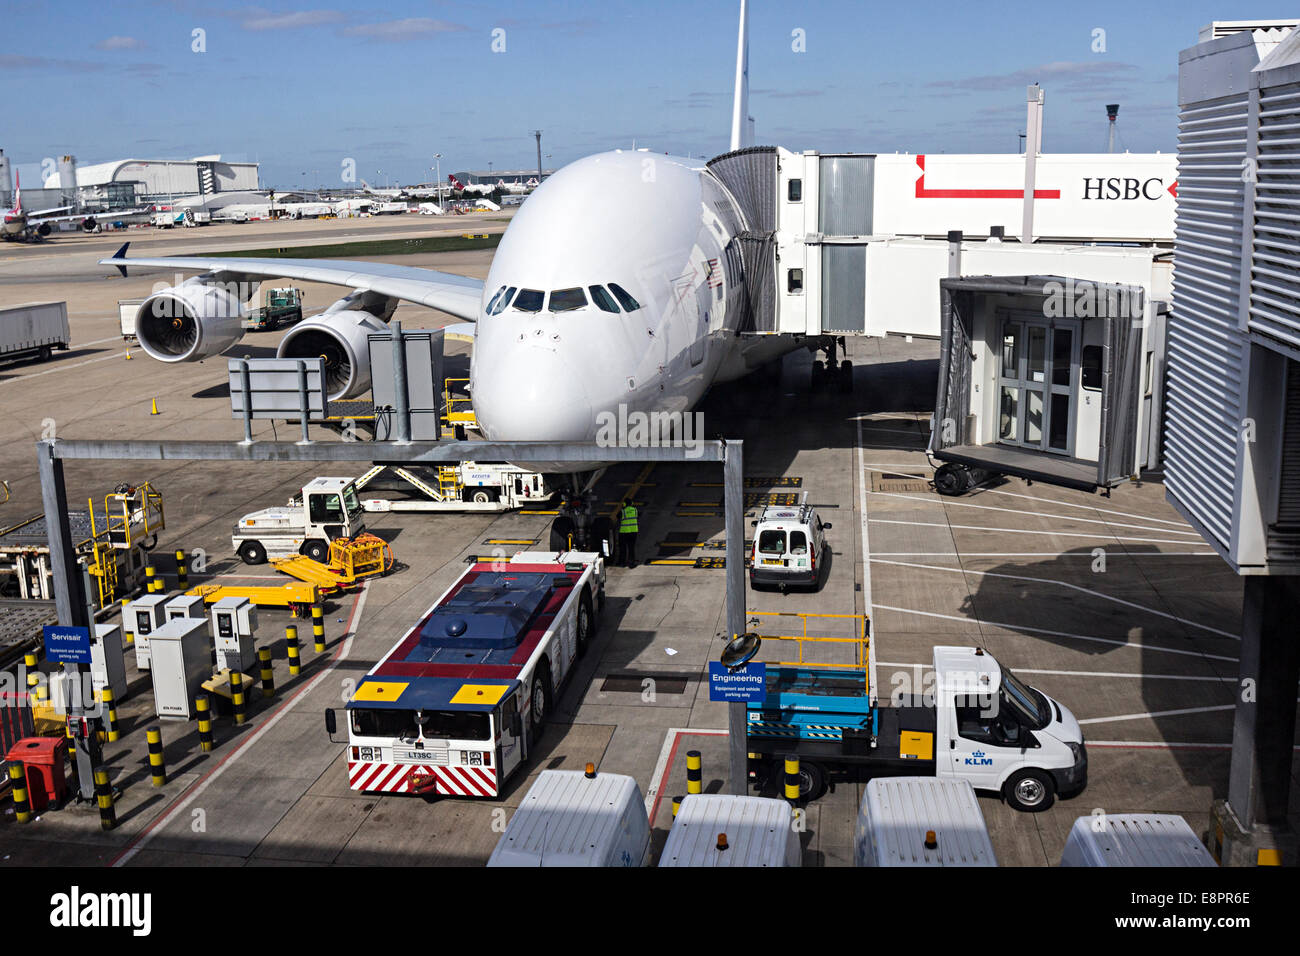 Aeromobili a terminale in attesa della partenza, l'aeroporto di Heathrow di Londra, Regno Unito Foto Stock